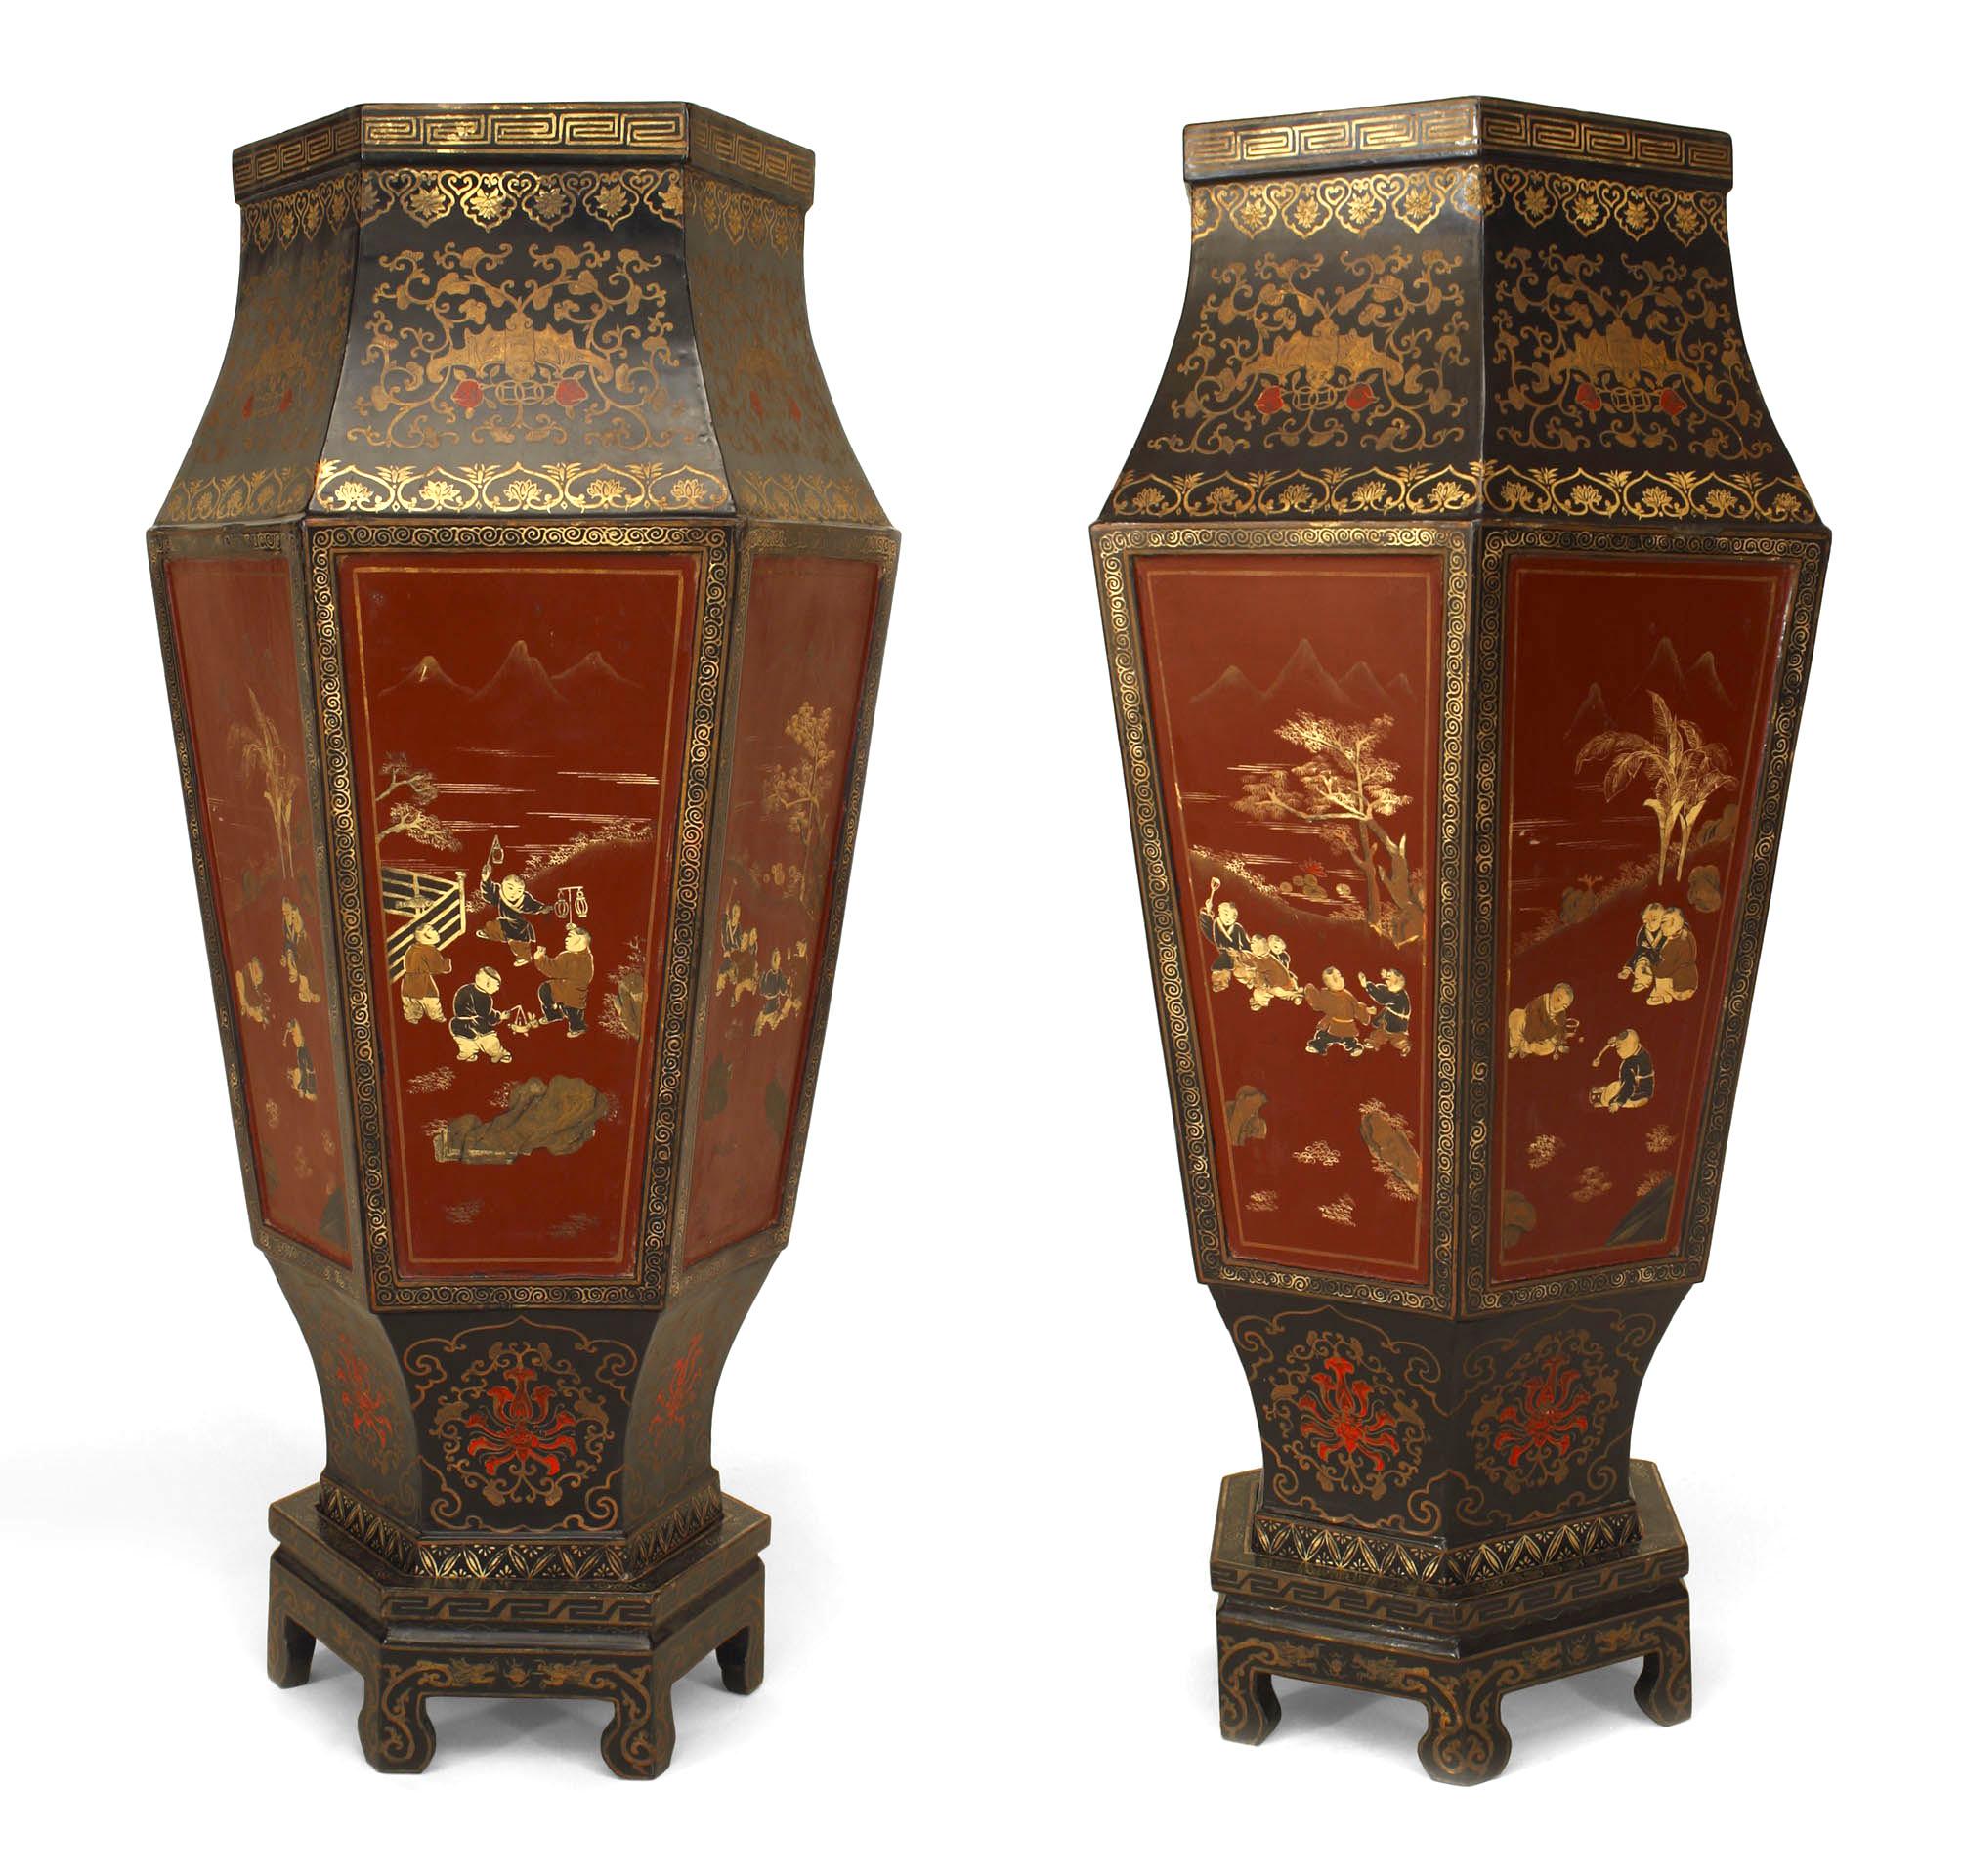 Paar große, rot und schwarz lackierte, sechsseitige Bodenvasen im englischen Regency-Stil mit Chinoiserie-Dekor auf kleinen Sockeln (19. Jh.) (Preis pro Paar)'
 